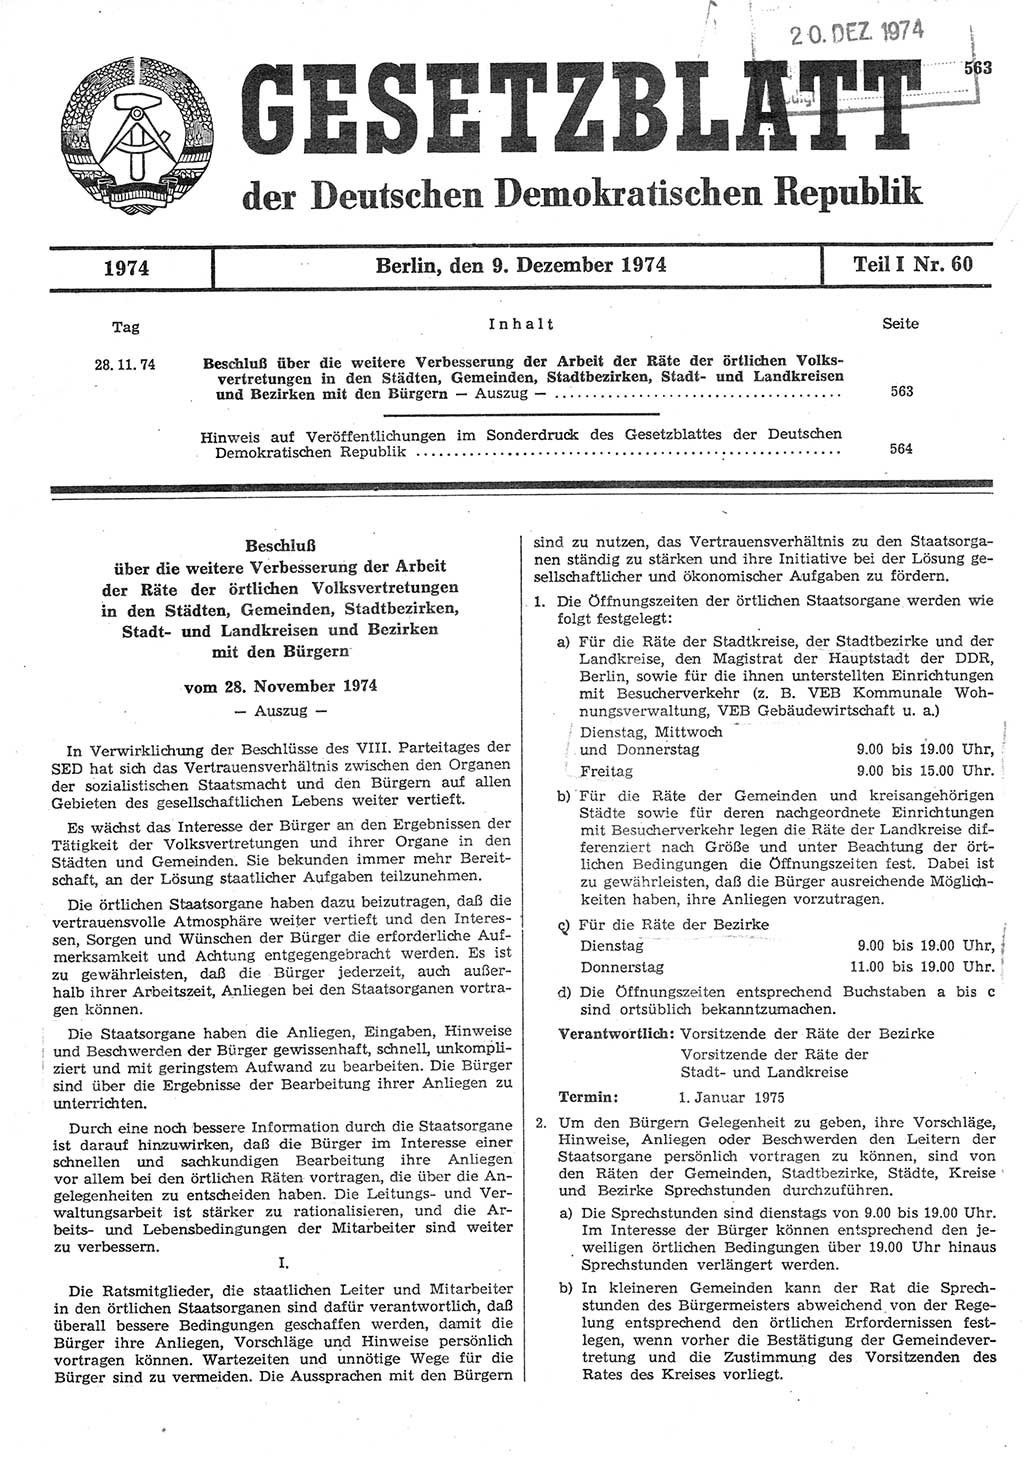 Gesetzblatt (GBl.) der Deutschen Demokratischen Republik (DDR) Teil Ⅰ 1974, Seite 563 (GBl. DDR Ⅰ 1974, S. 563)